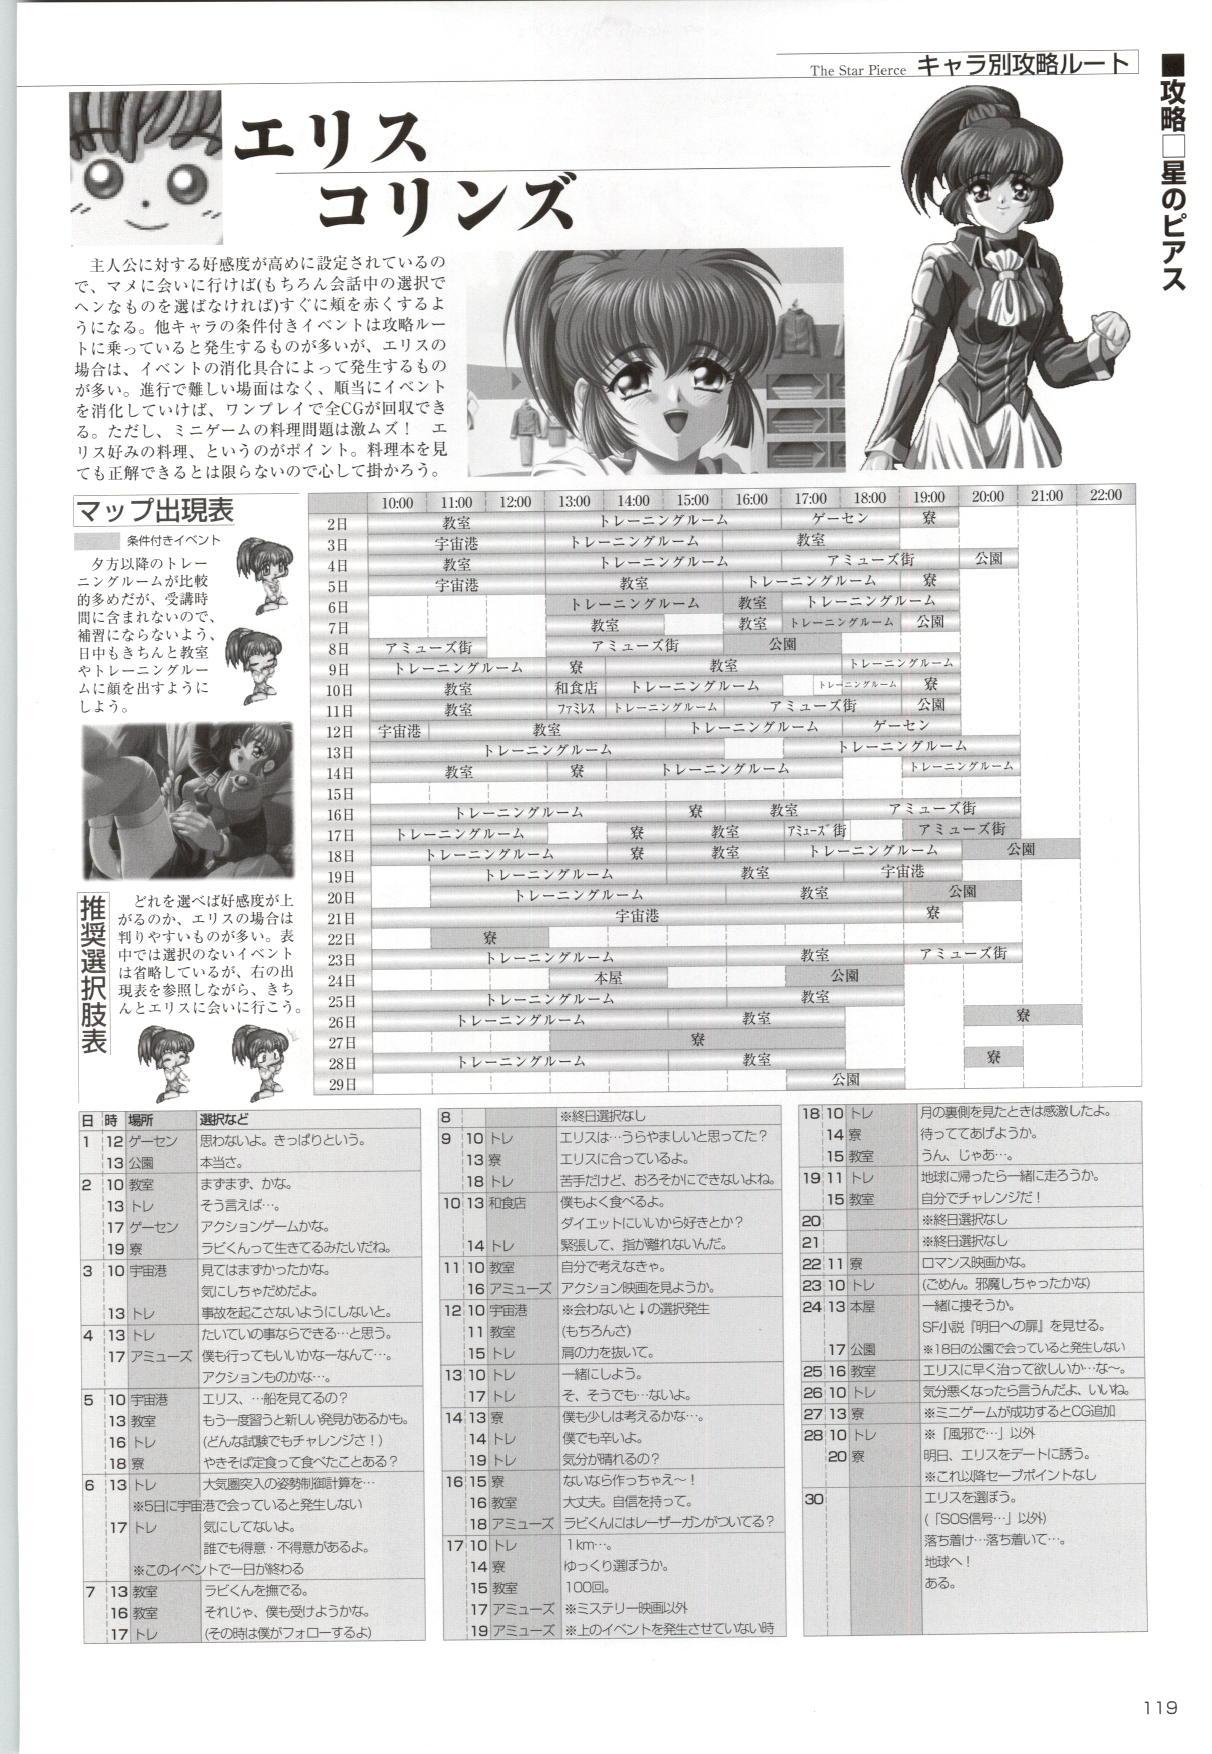 [Kinmedai Pink] ACTRESS Collection Kizuna + Seduce ~Yuuwaku~ + Hoshi no Pierce Computer Graphics & Original Pictures 119